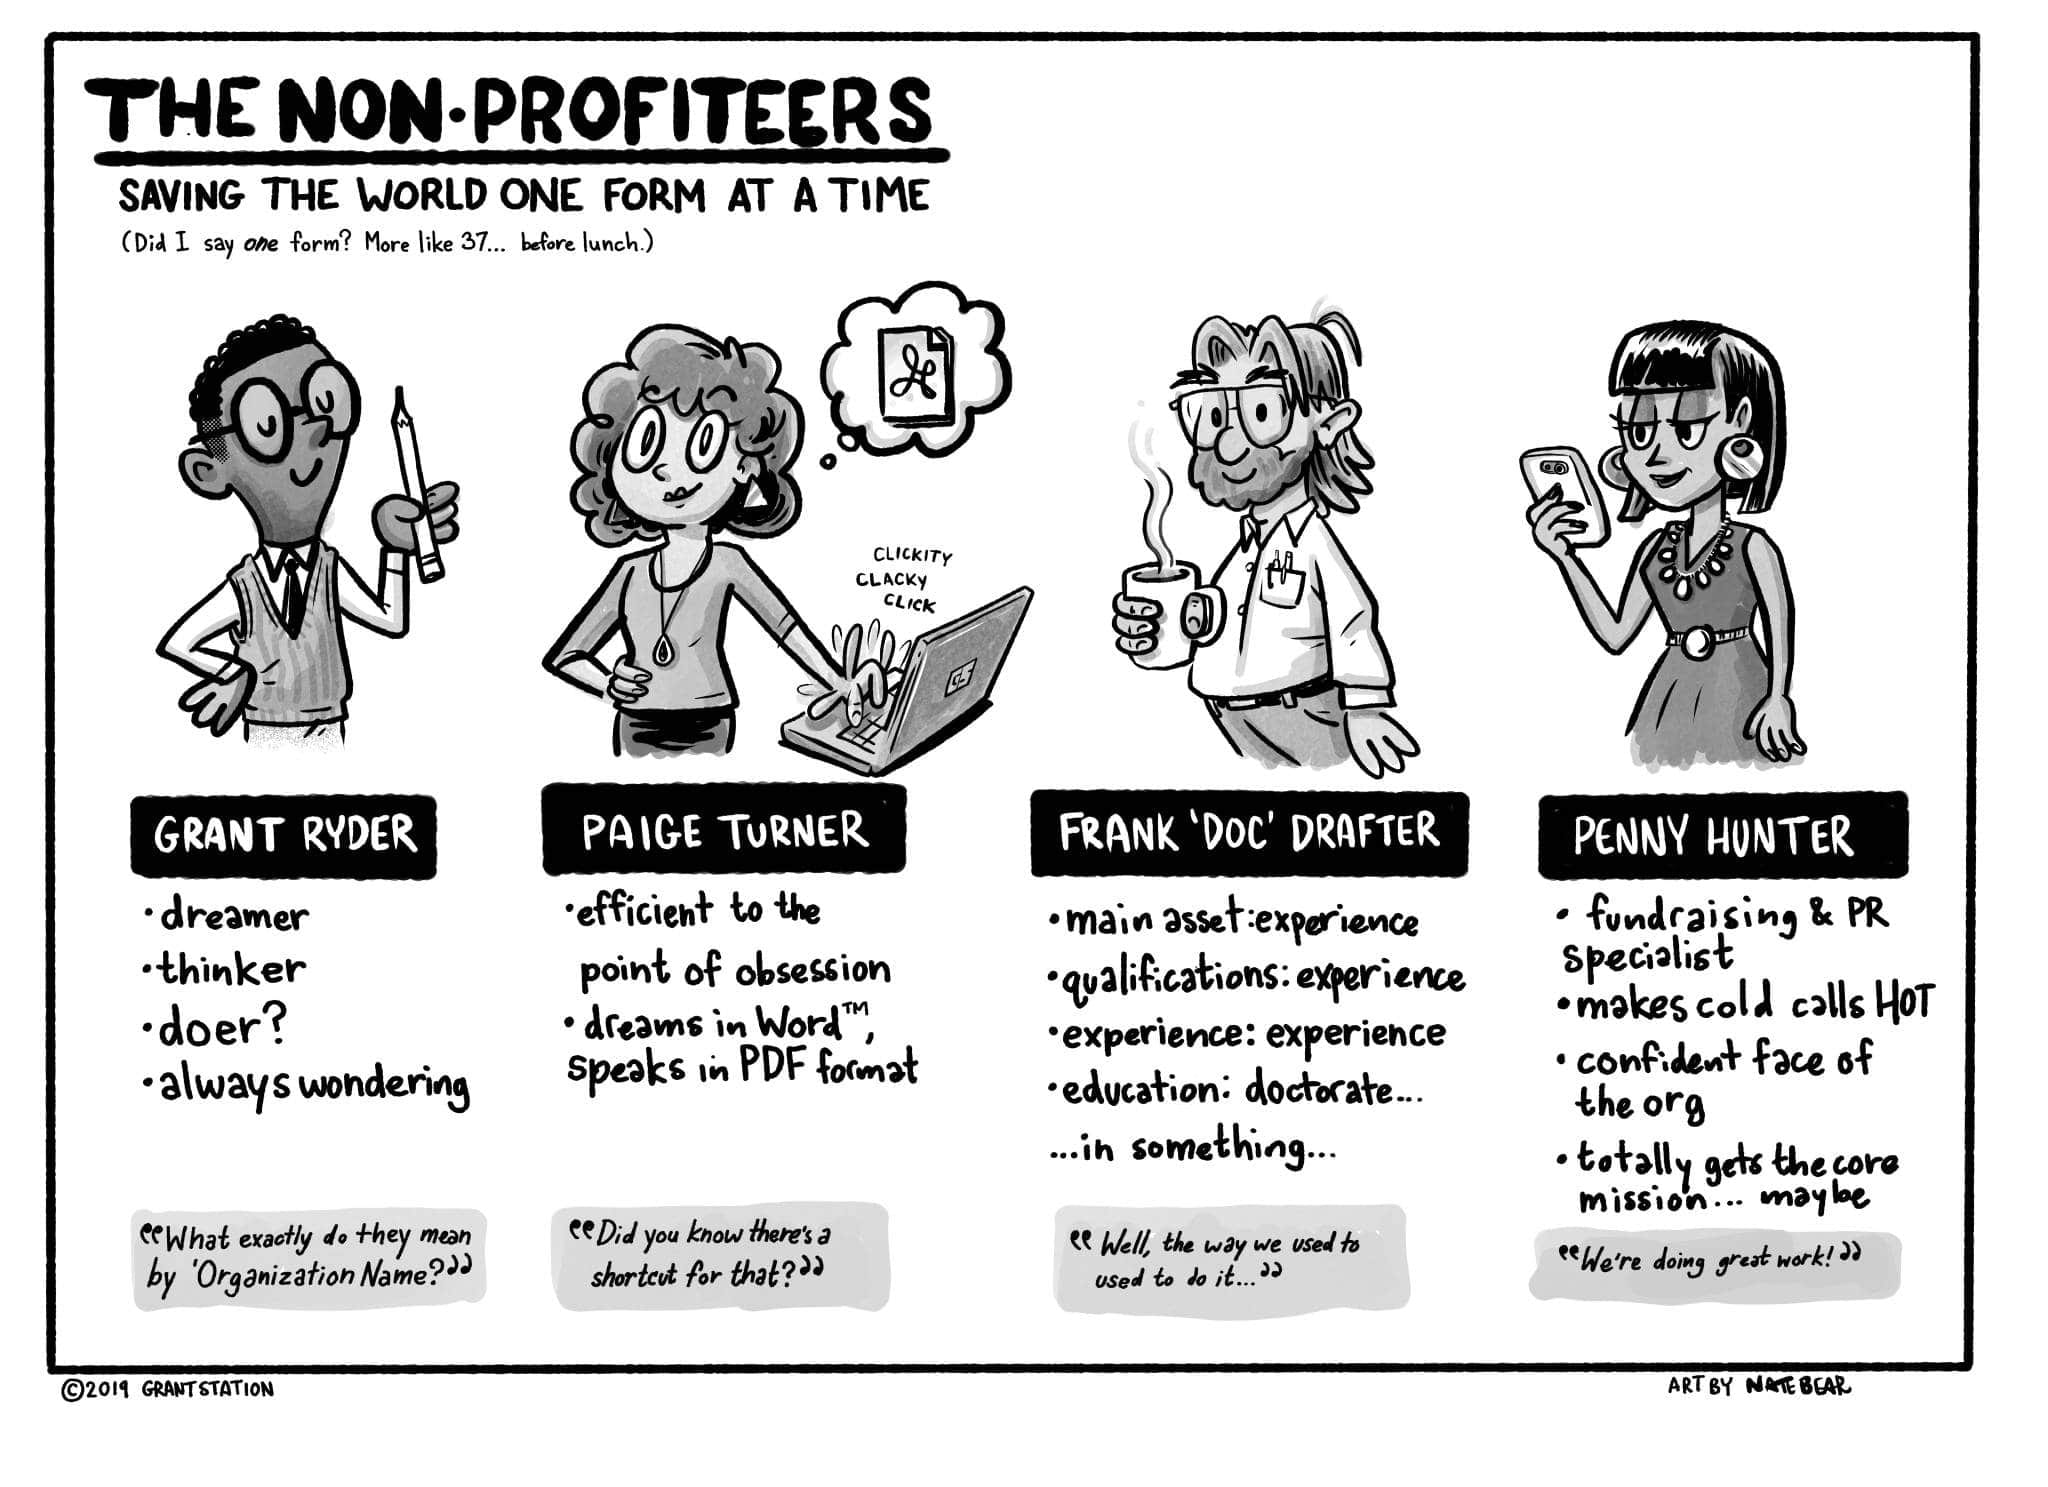 Meet the Nonprofiteers